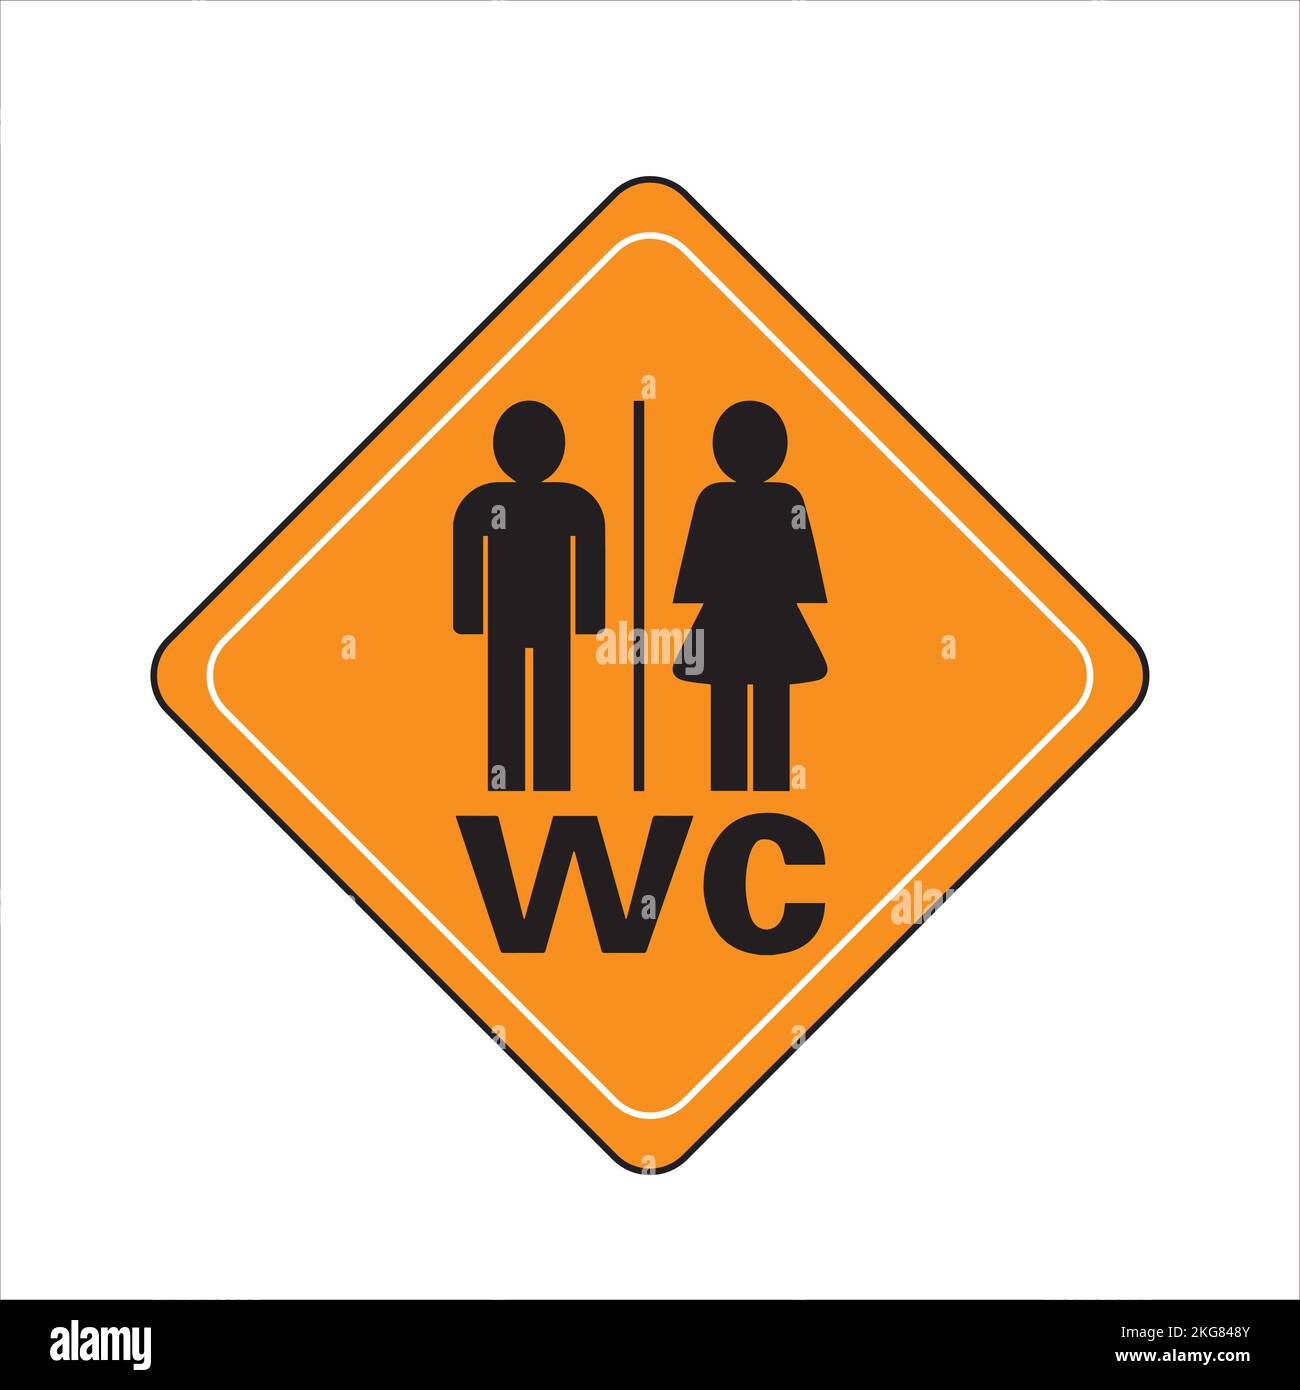 Wc toilet restroom women men sign Stock Vector